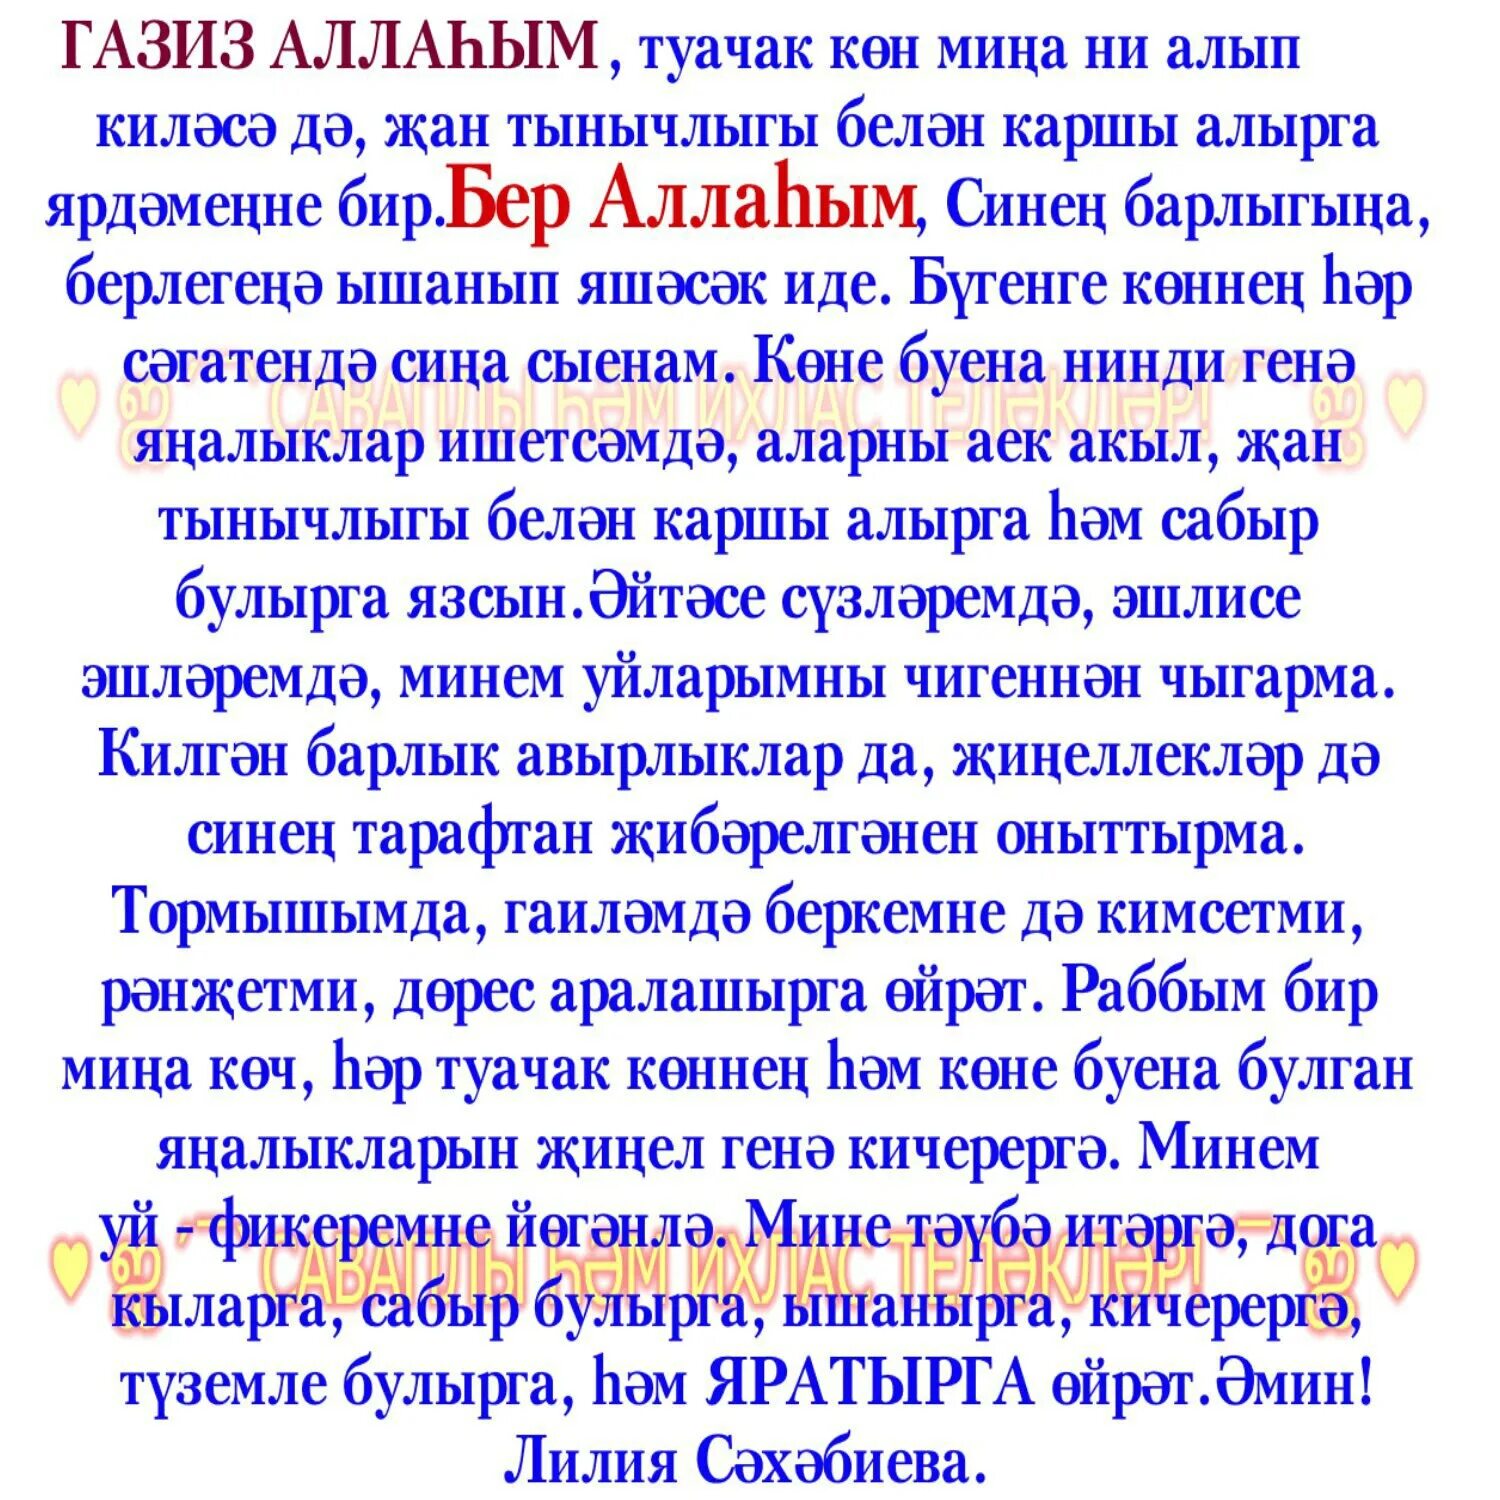 Экзамен догасы. Экзамена догалар. Дога усопшим на татарском языке. Молитва ЯУШАН. Сэхэрдэн сон укыла торган дога